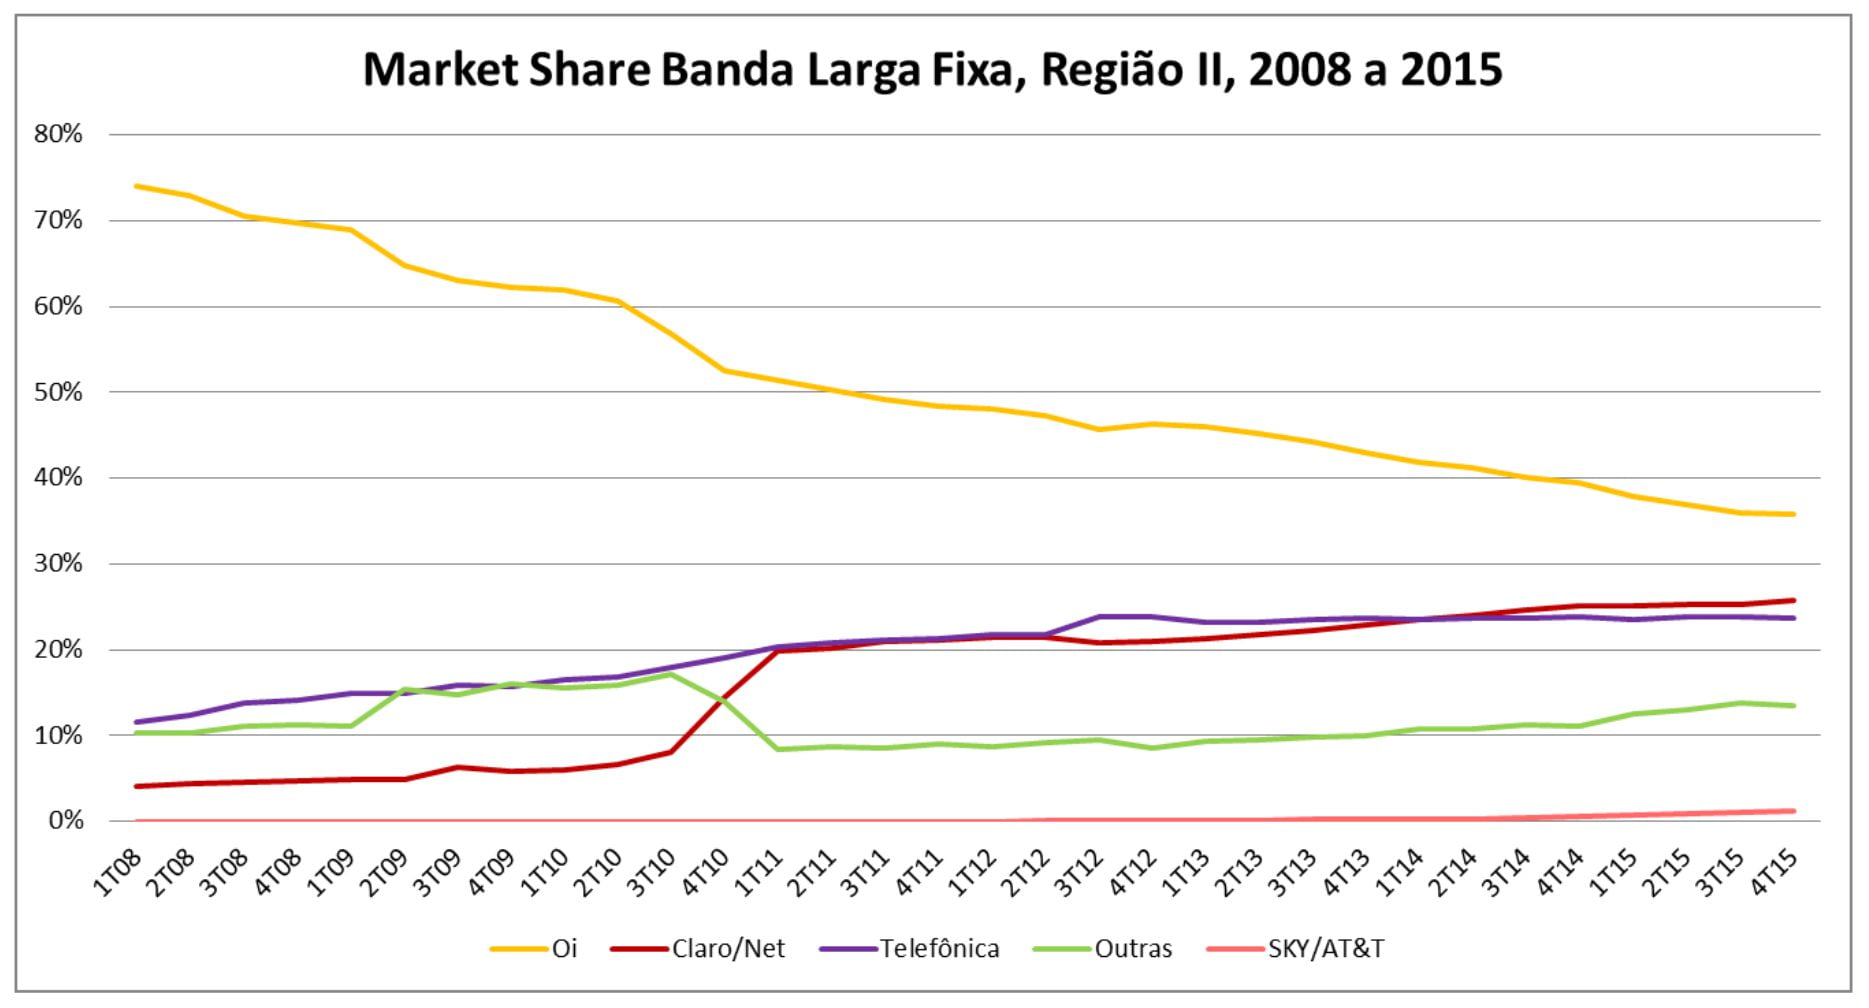 Figura-38-Evolucao-de-market-share-por-operadora-Regiao-II-2008-2015